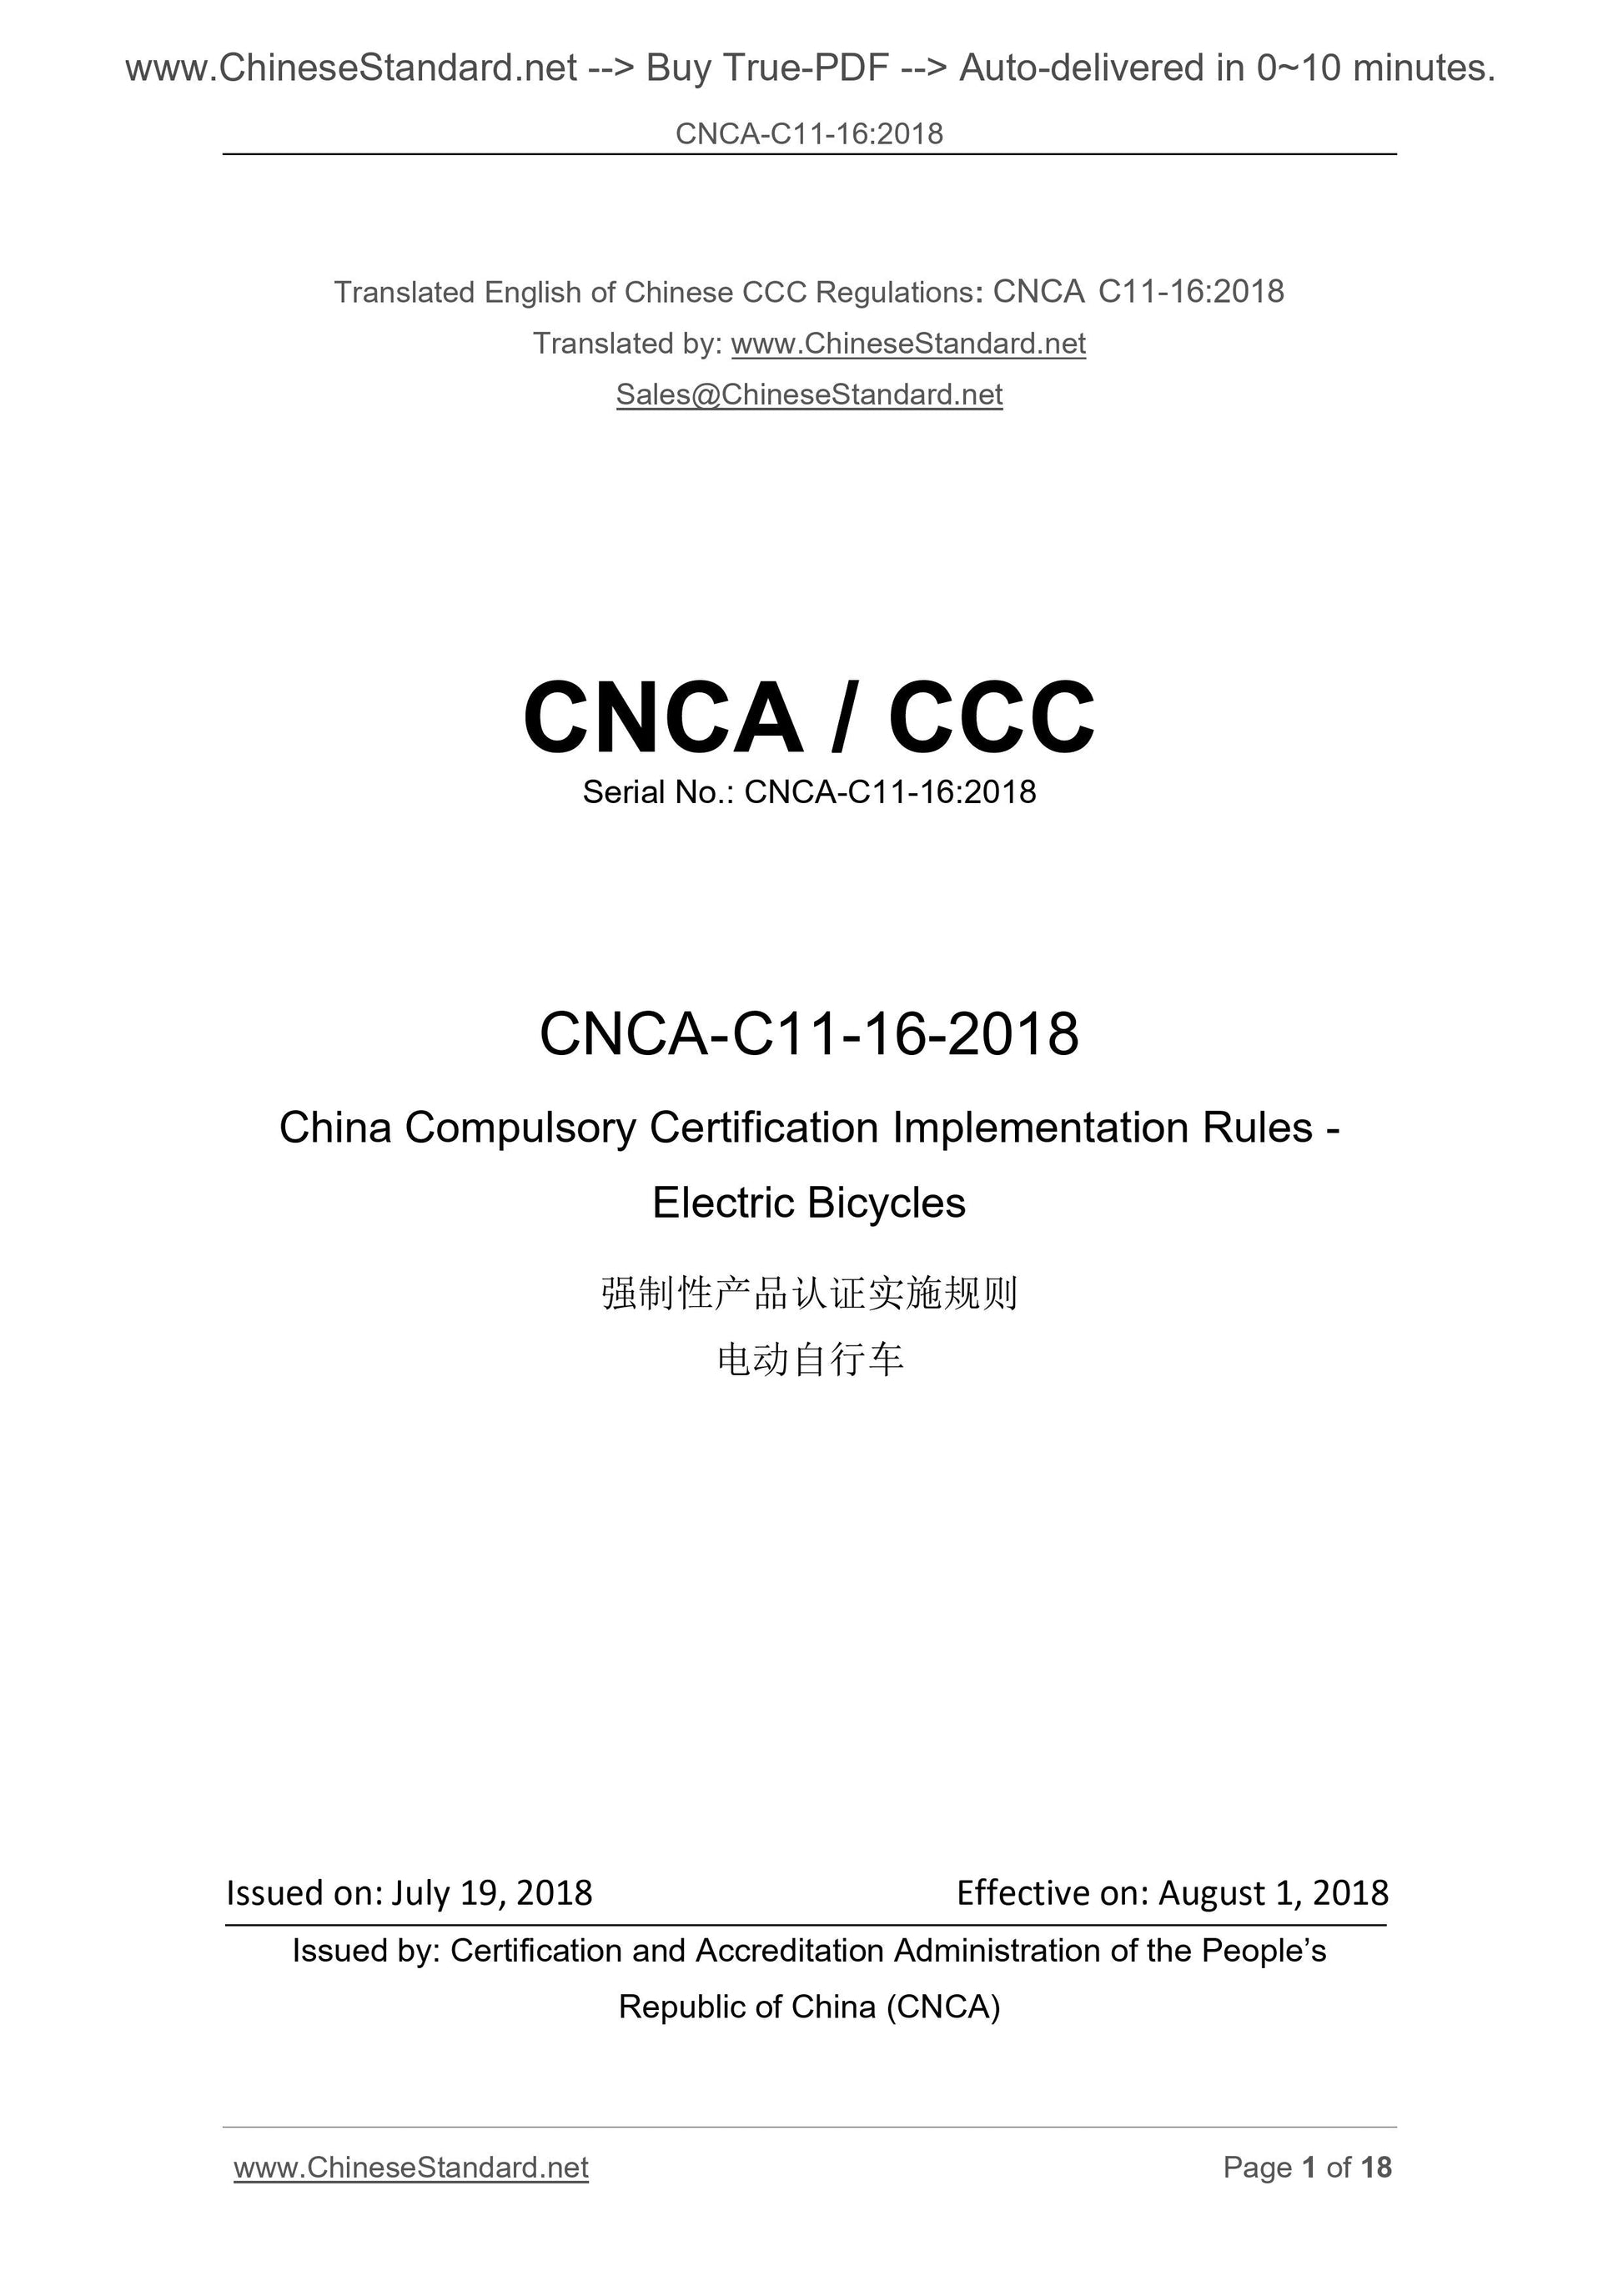 CNCA C11-16-2018 Page 1